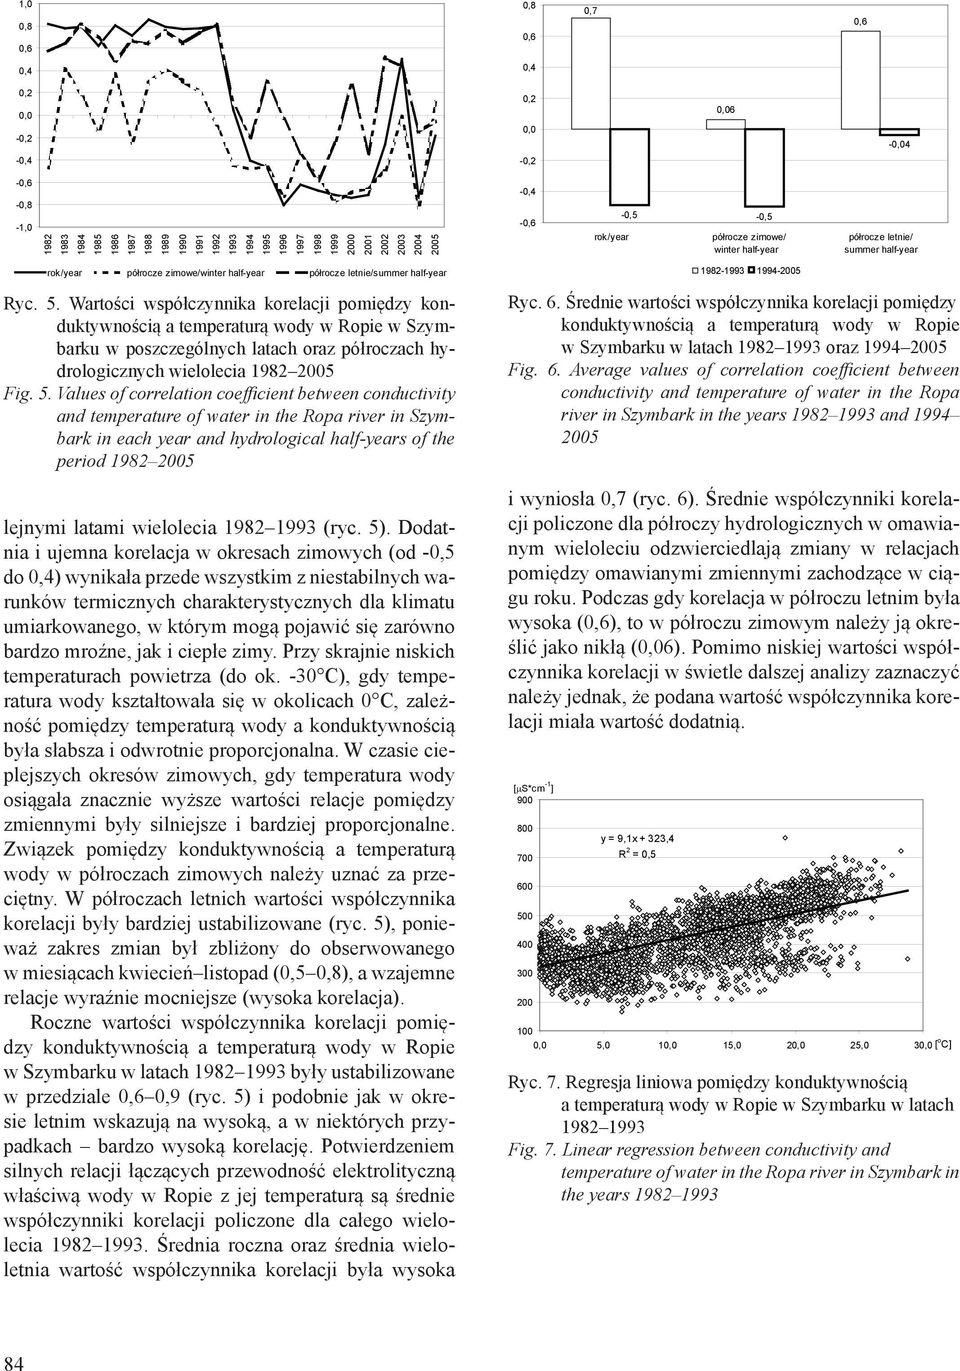 Wartości współczynnika korelacji pomiędzy konduktywnością a temperaturą wody w Ropie w Szymbarku w poszczególnych latach oraz półroczach hydrologicznych wielolecia 1982 5 